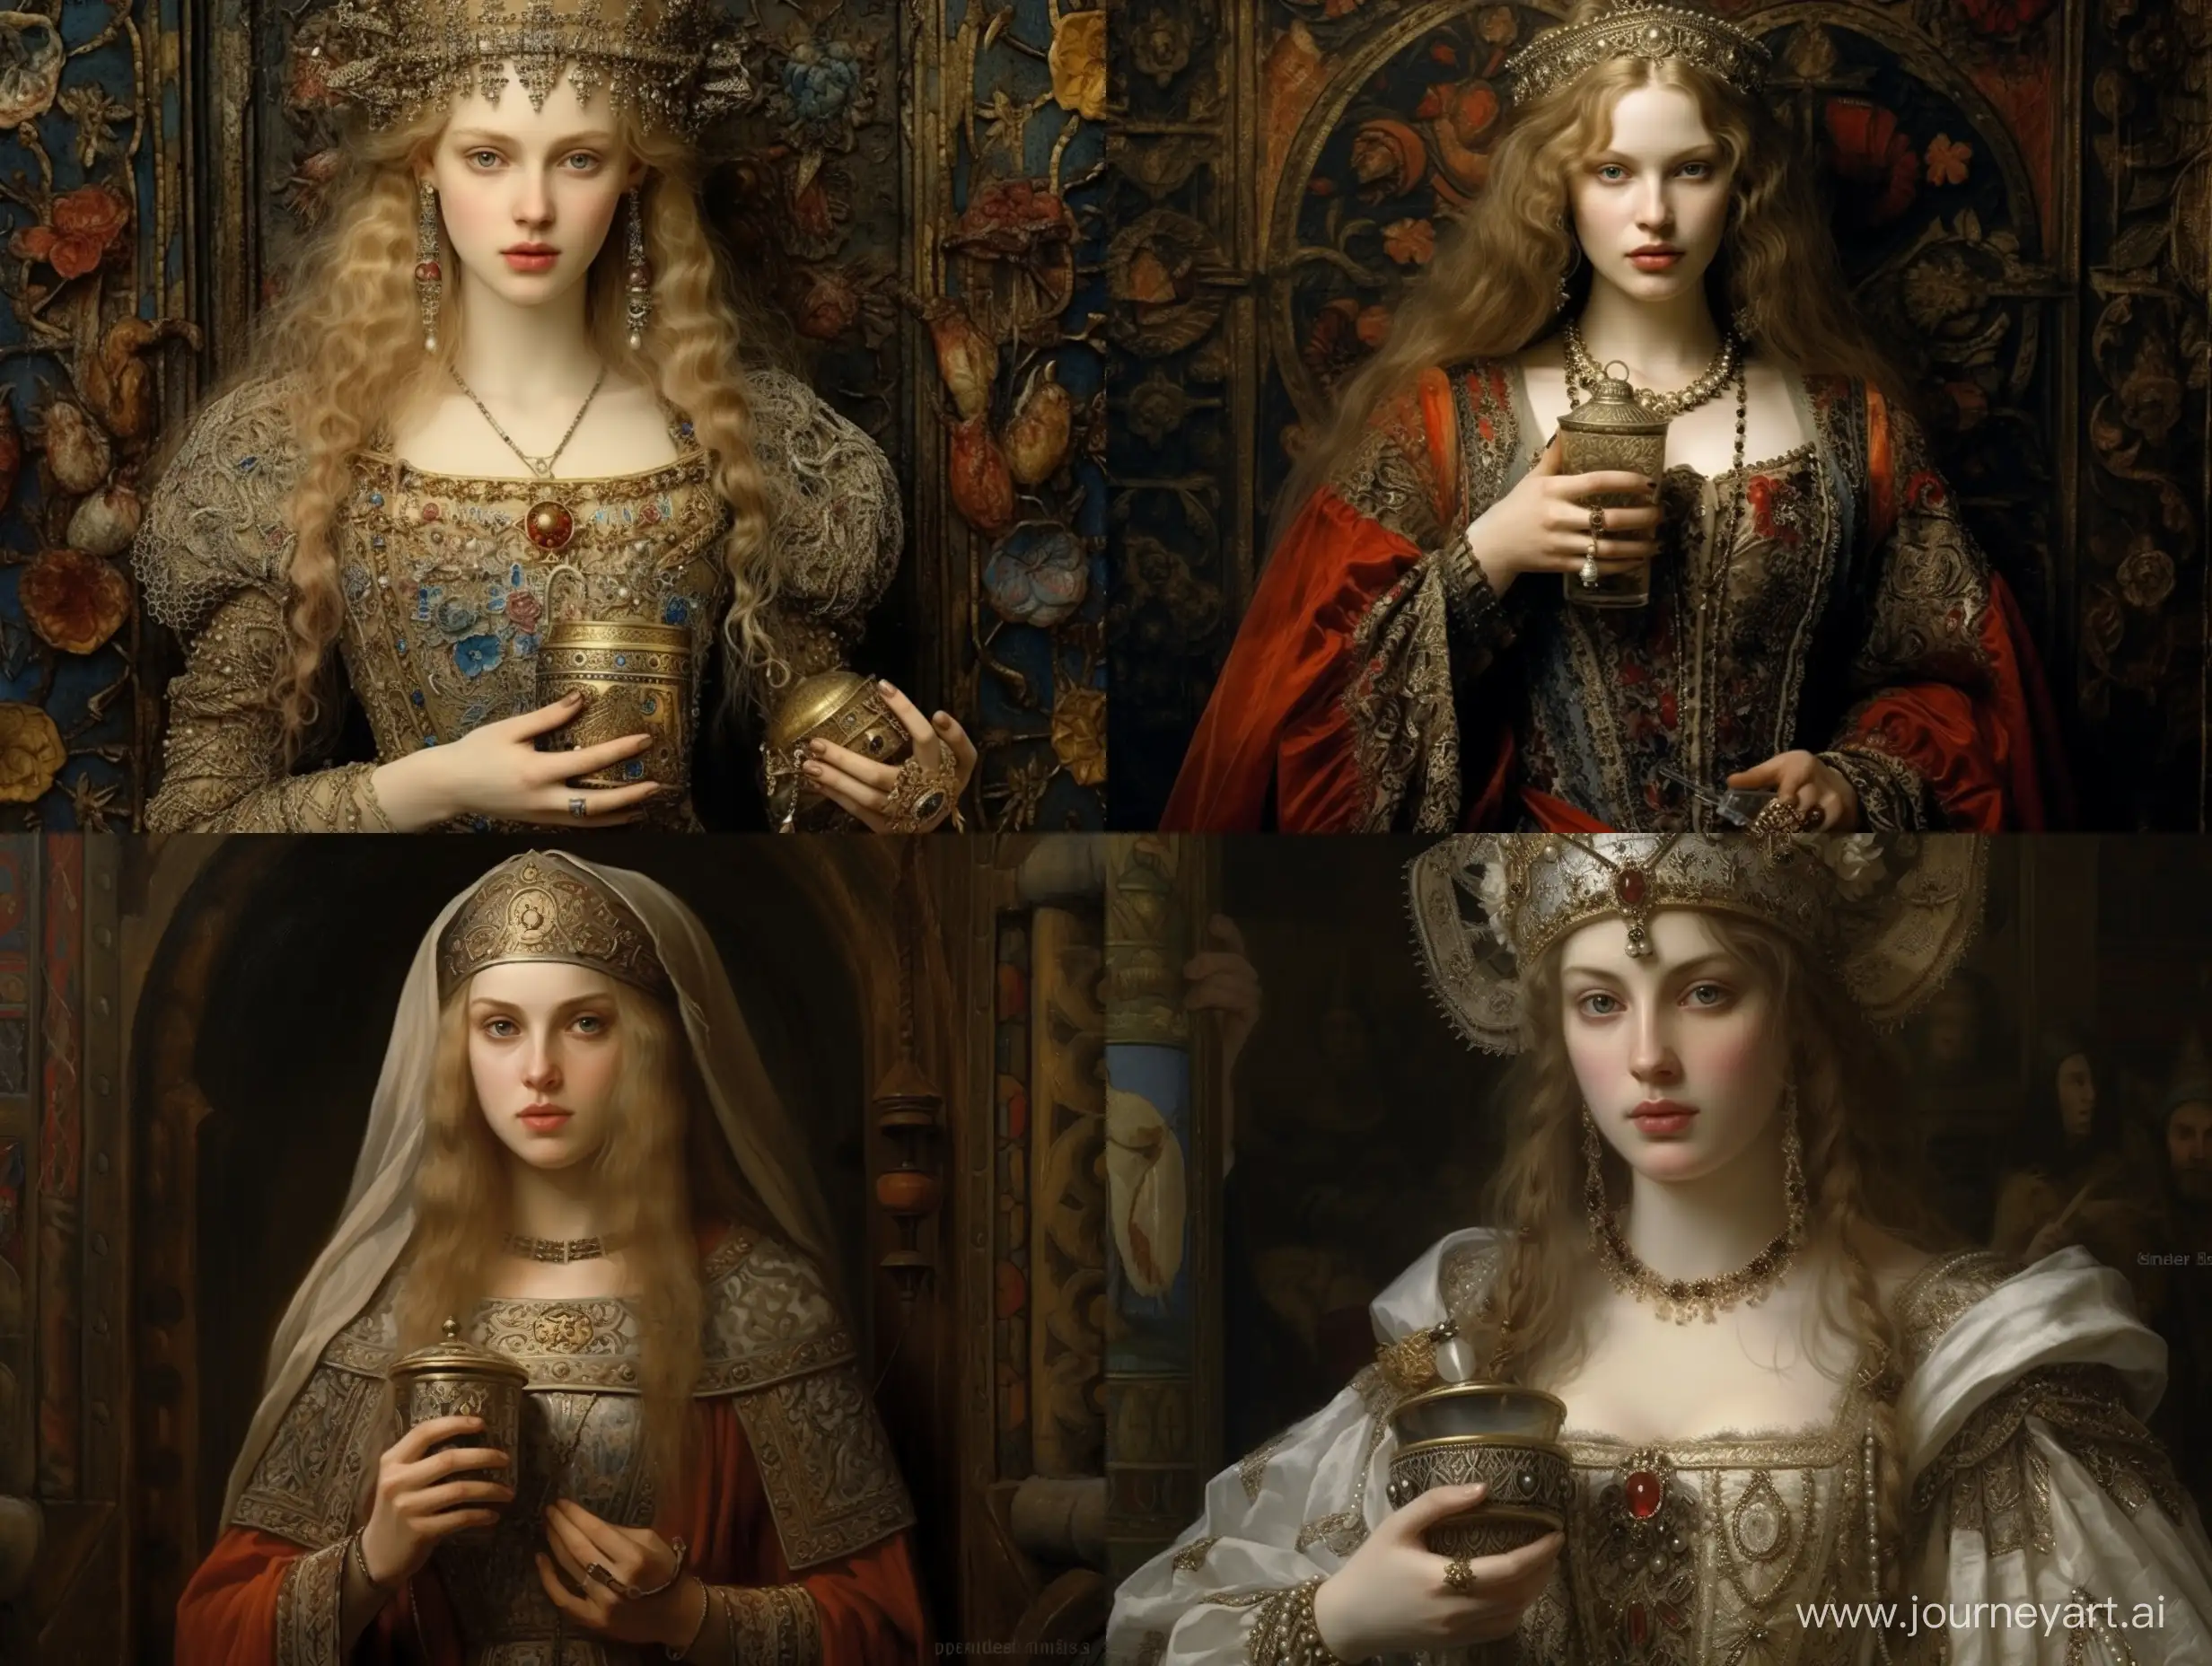 Женщина 14 век, красиво, детально, реалистично, одежда! Того времени, держит в руках парфюм